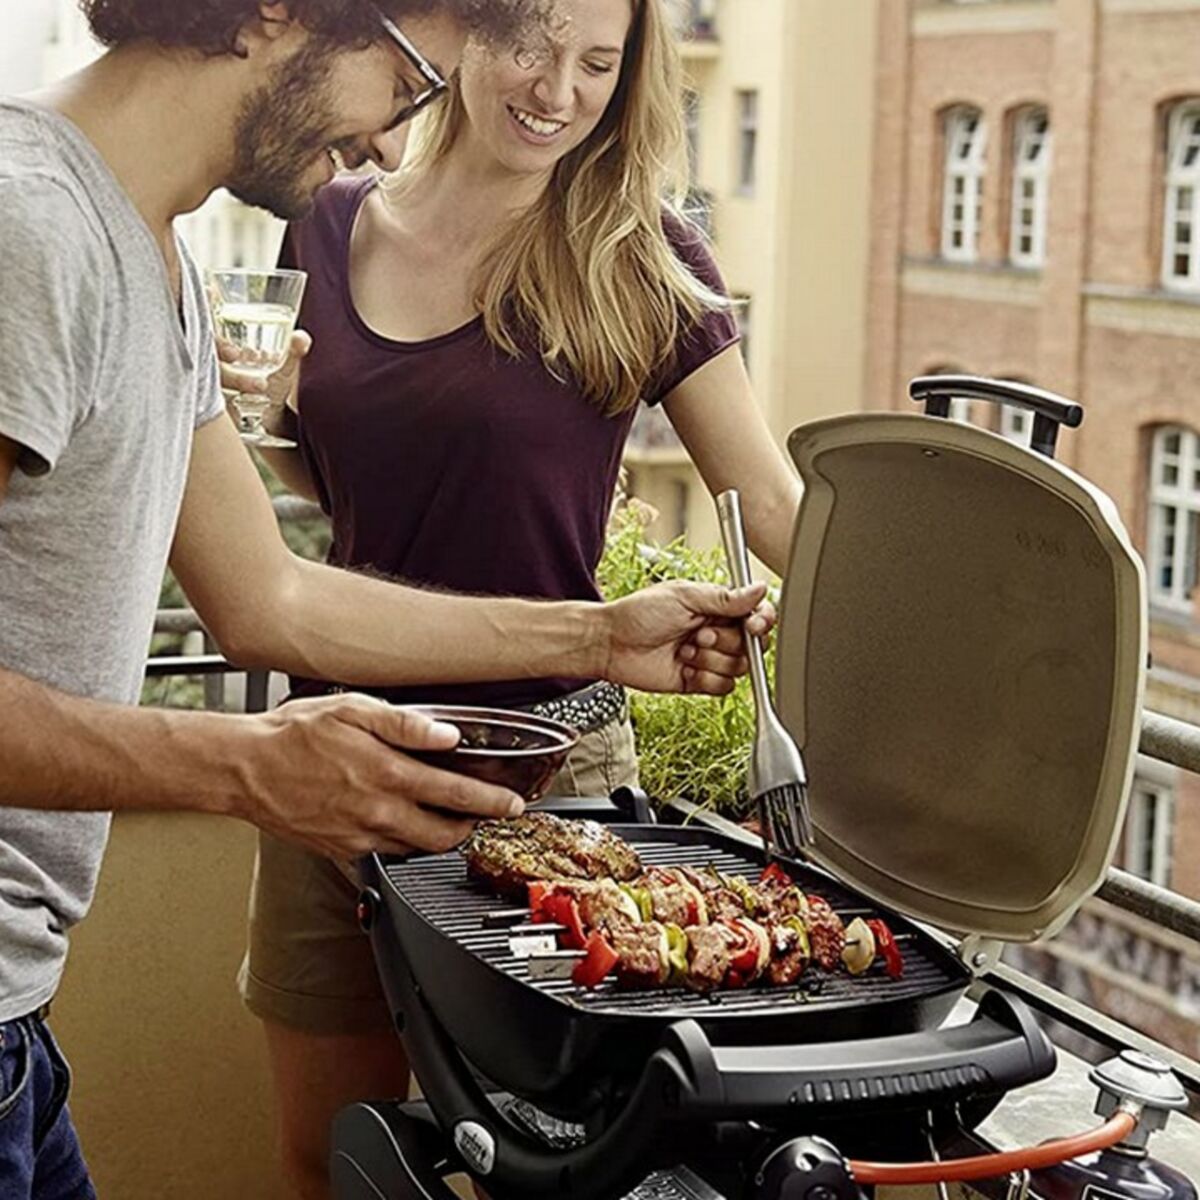 Prime Day  : Ne manquez pas les offres sur les barbecues Weber et ses  accessoires